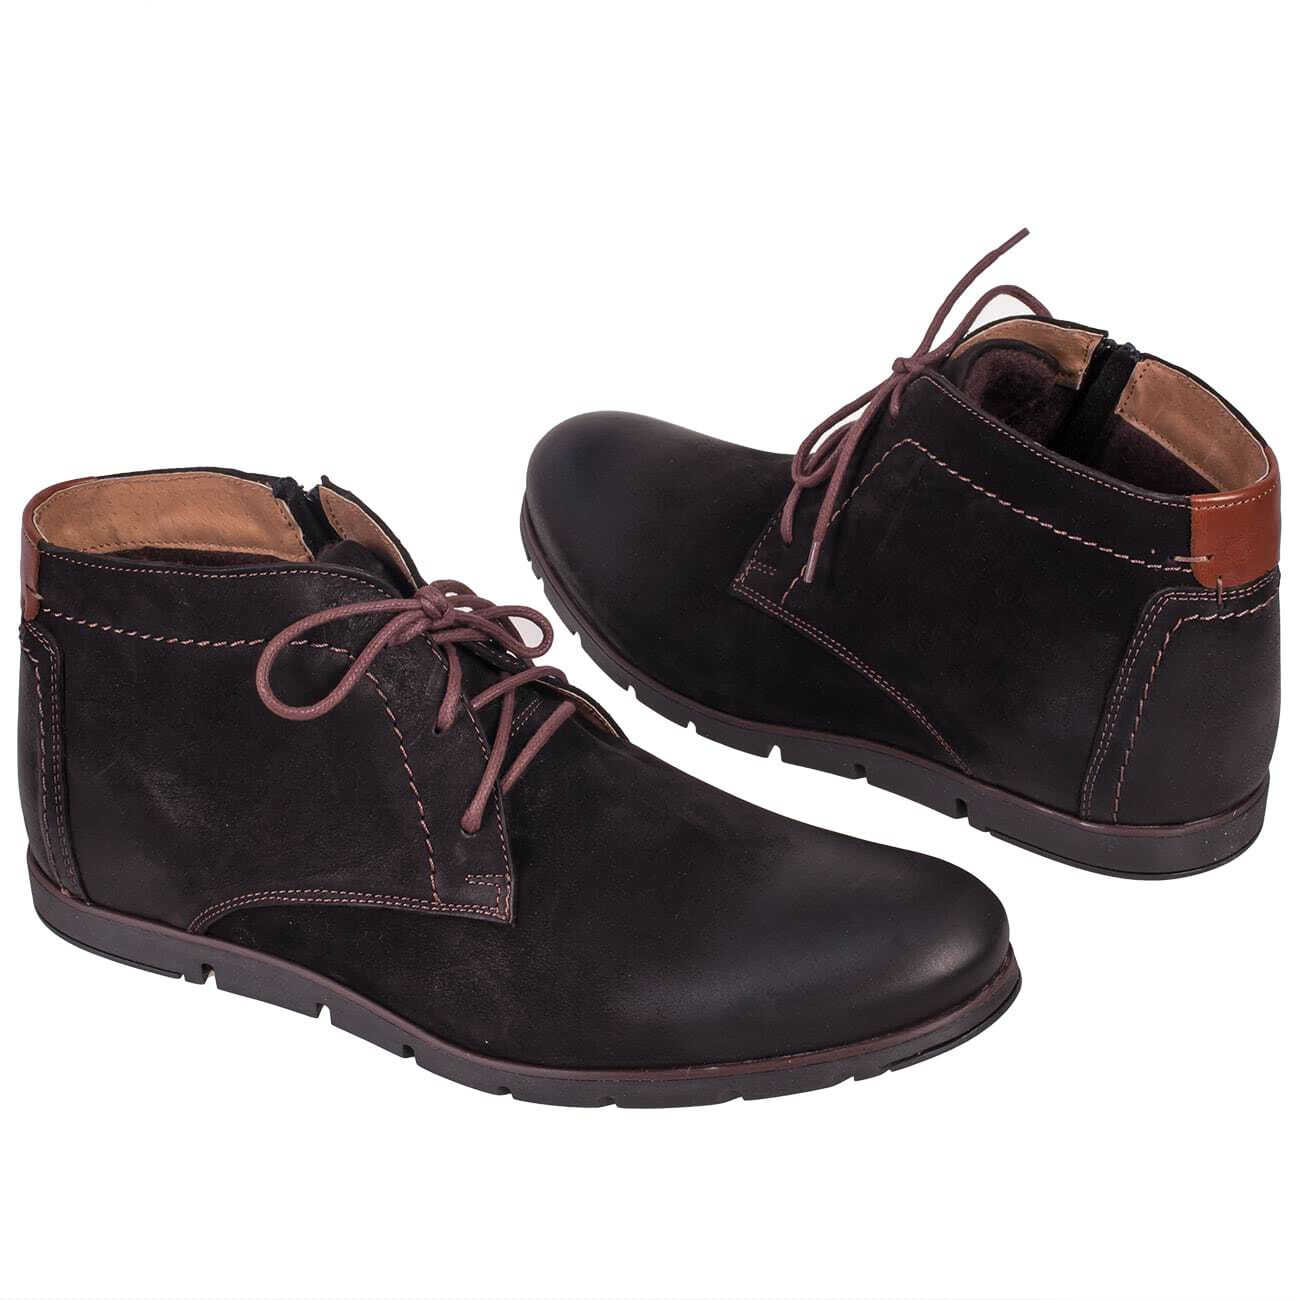 Модные мужские ботинки на осень из нубука утепленные байкой купить винтернет магазине Kwinto